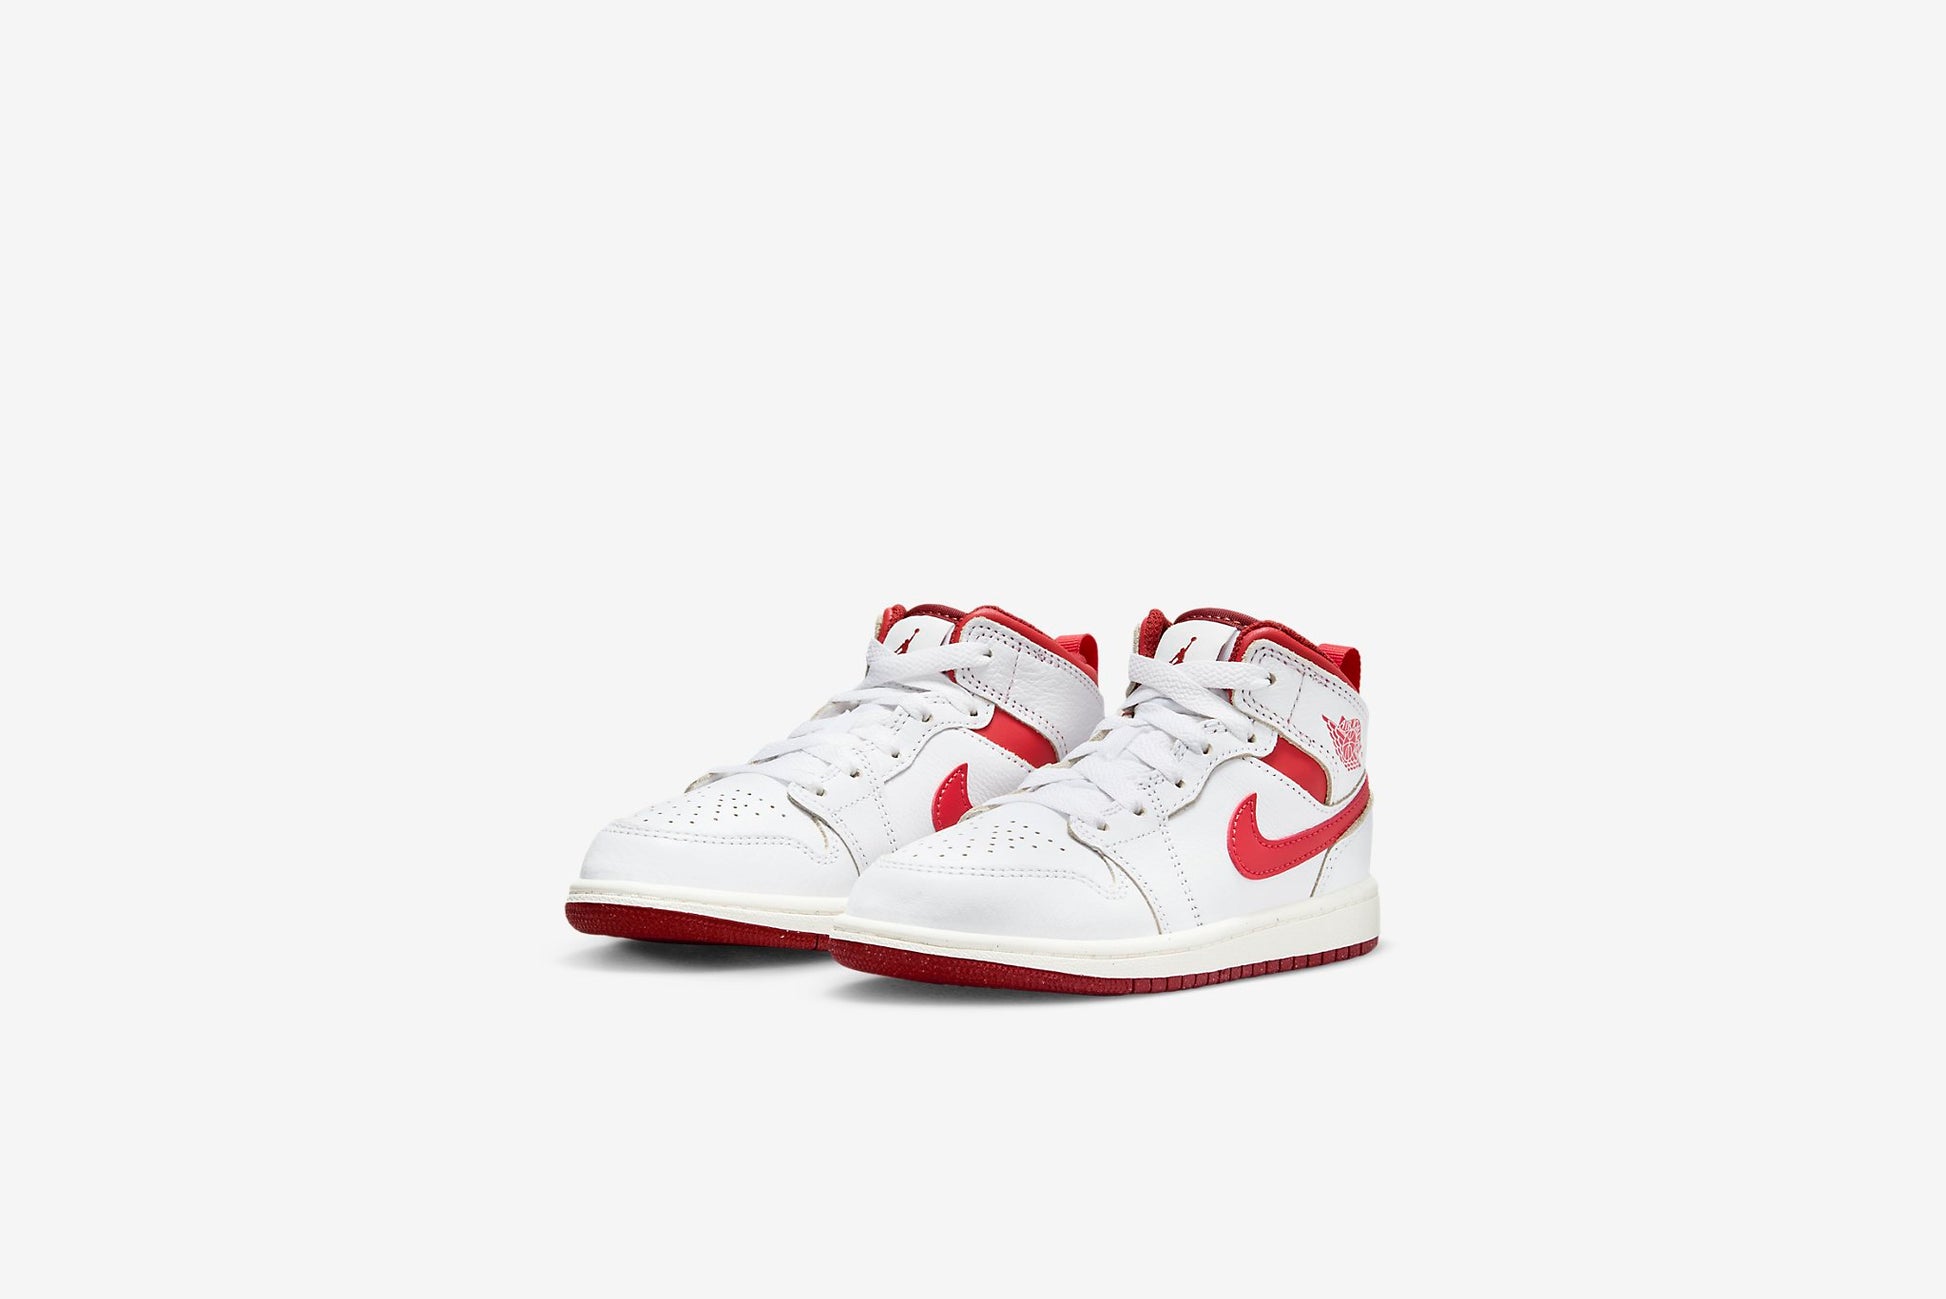 first Air Jordan basketball sneakers